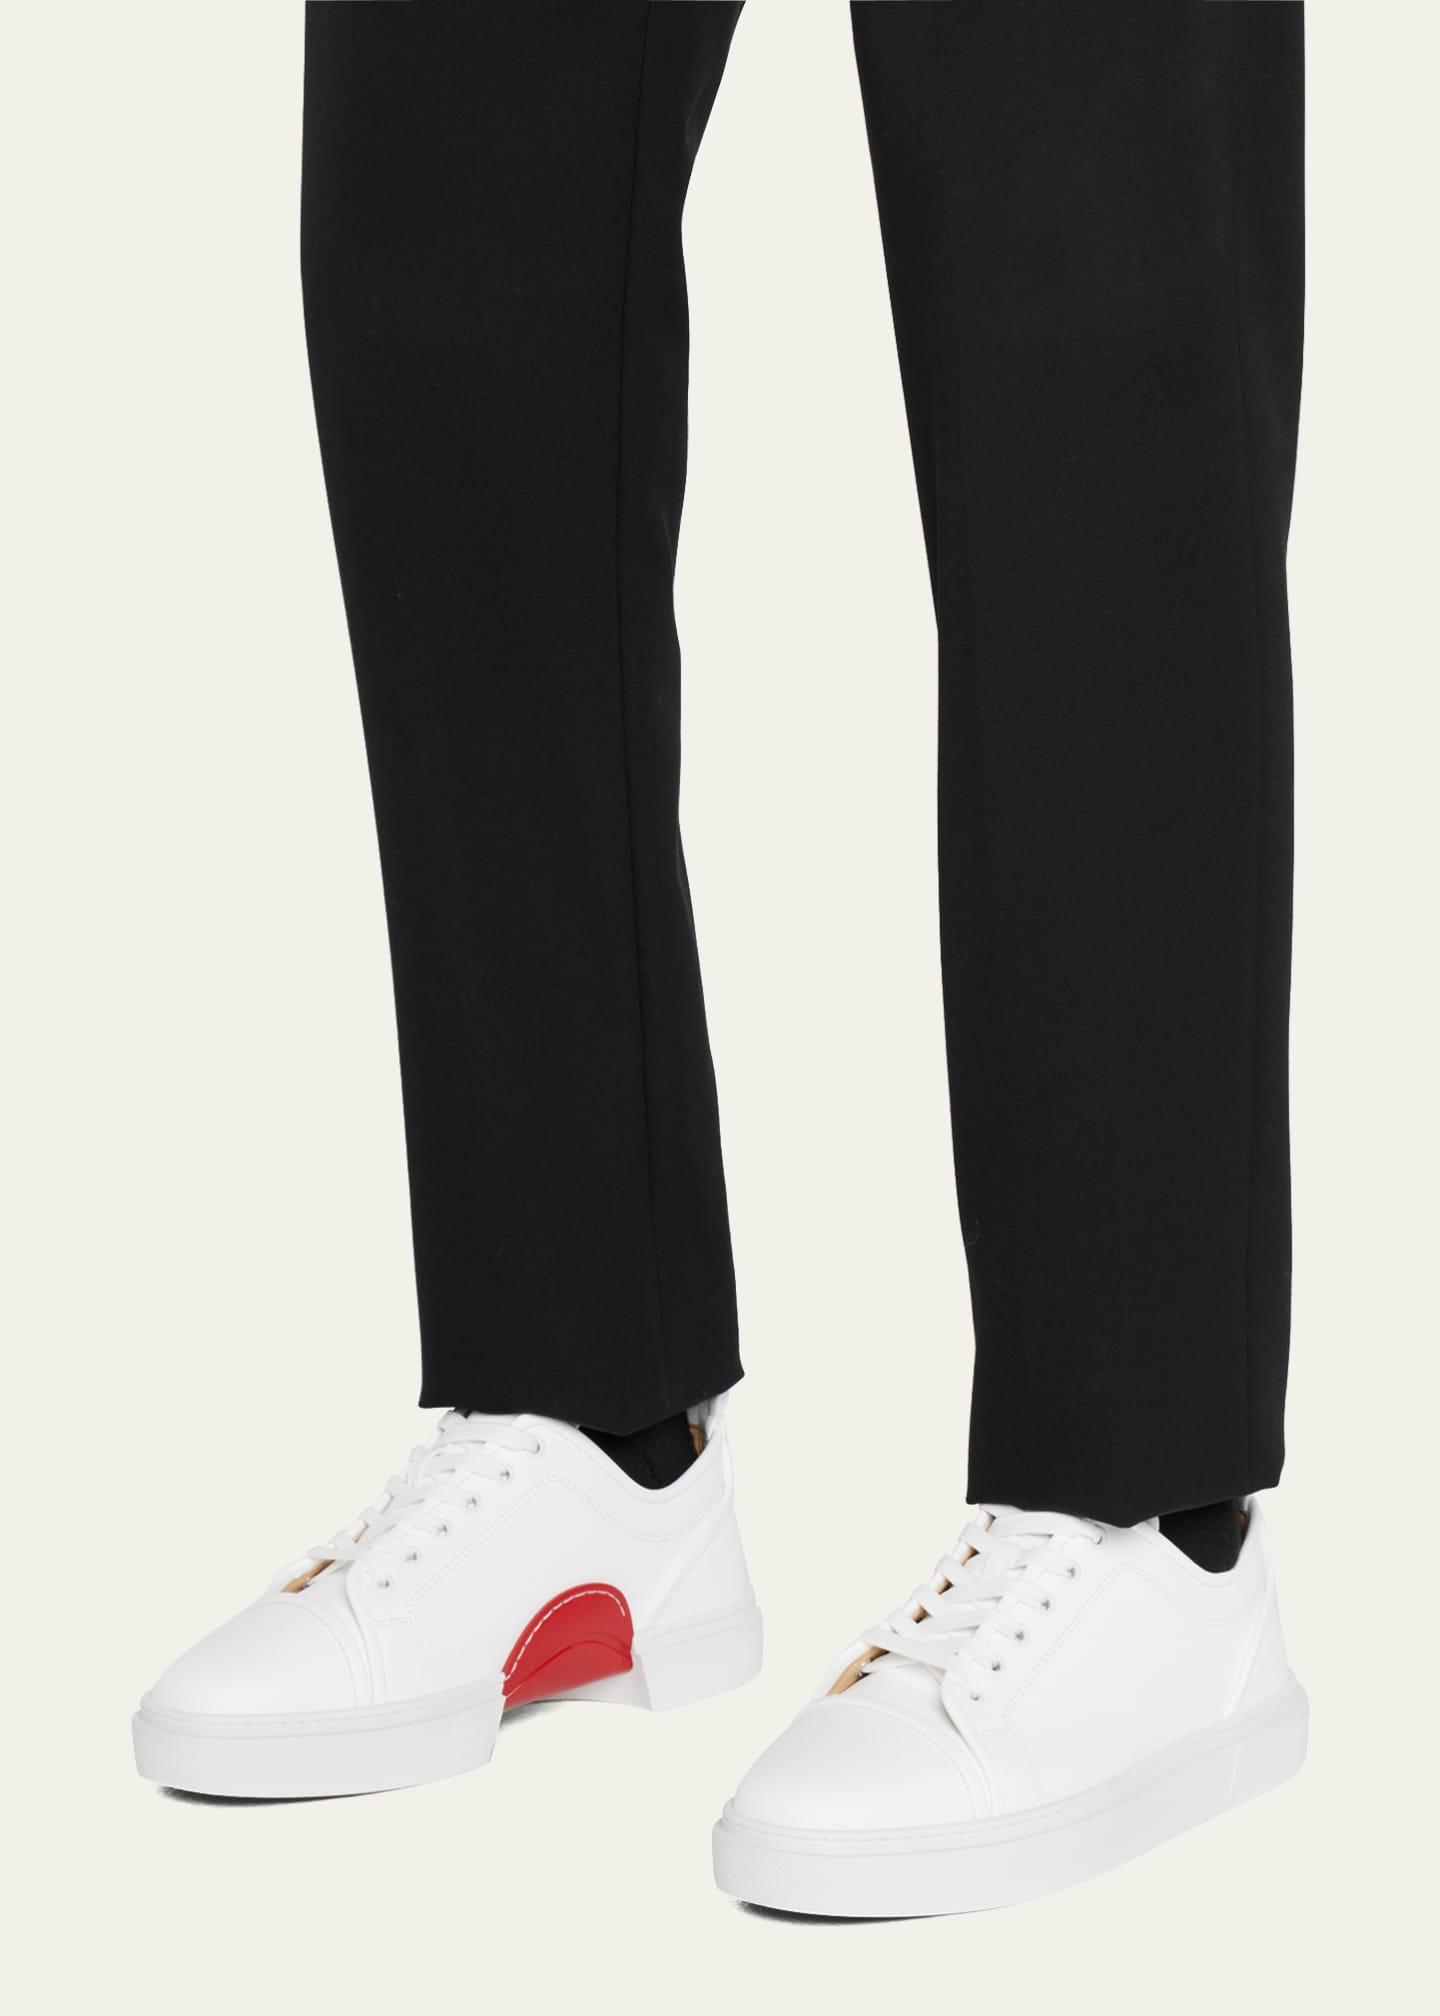 Christian Louboutin Men's Louis Junior Low-Top Sneakers - Bergdorf Goodman